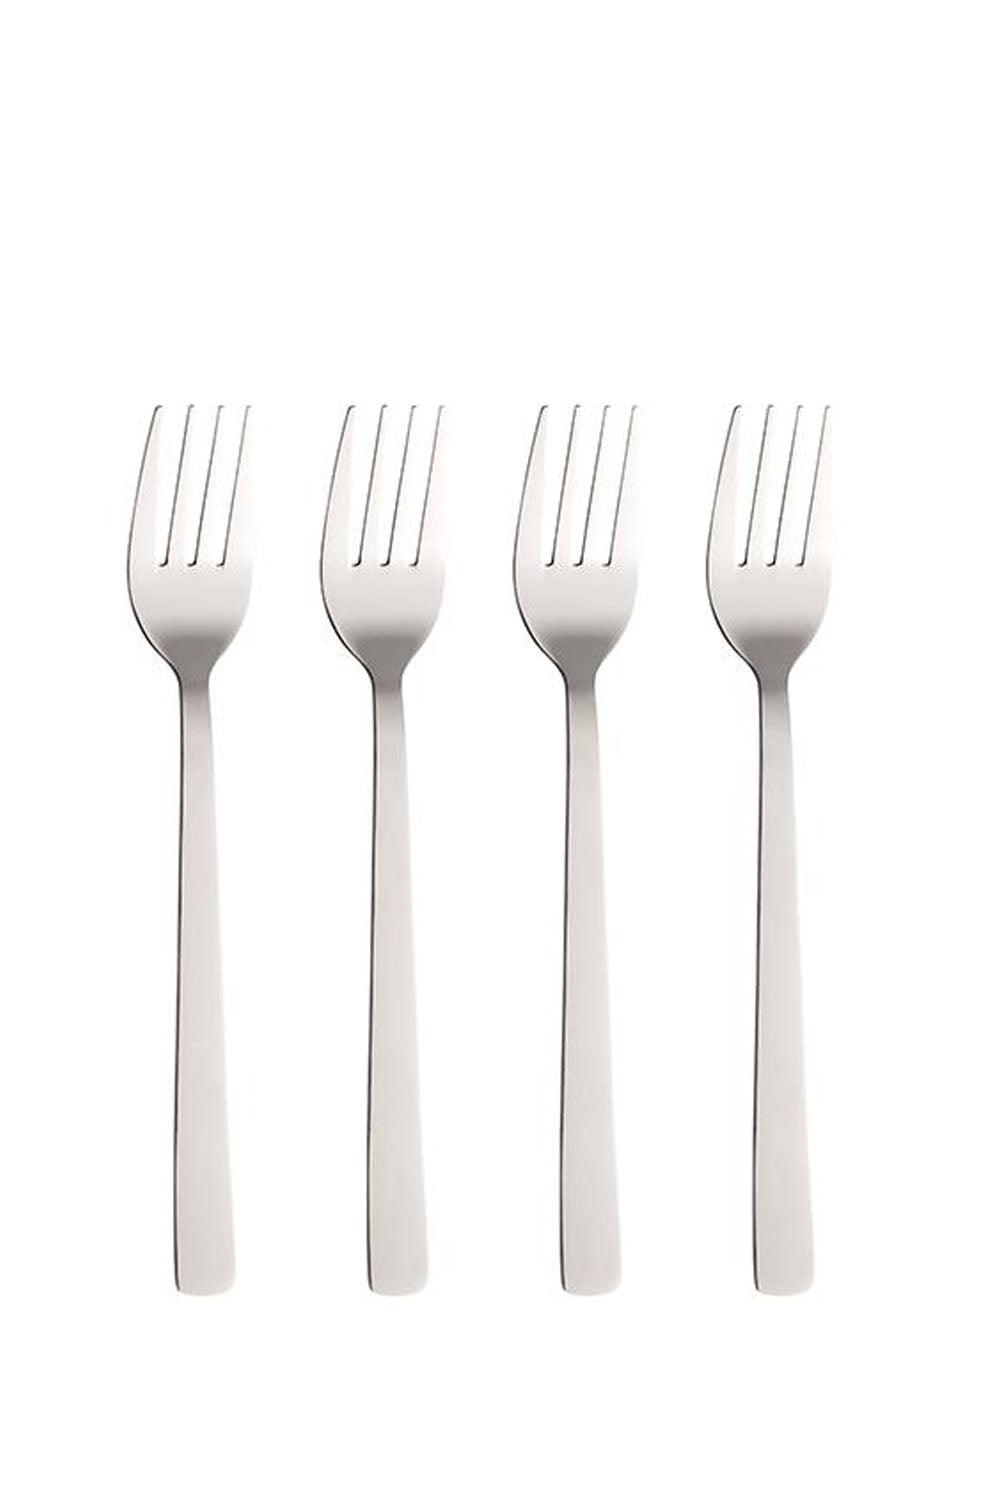 Set of 4 Mirror Polished Forks Set of 4 Mirror Polished Forks Maison7